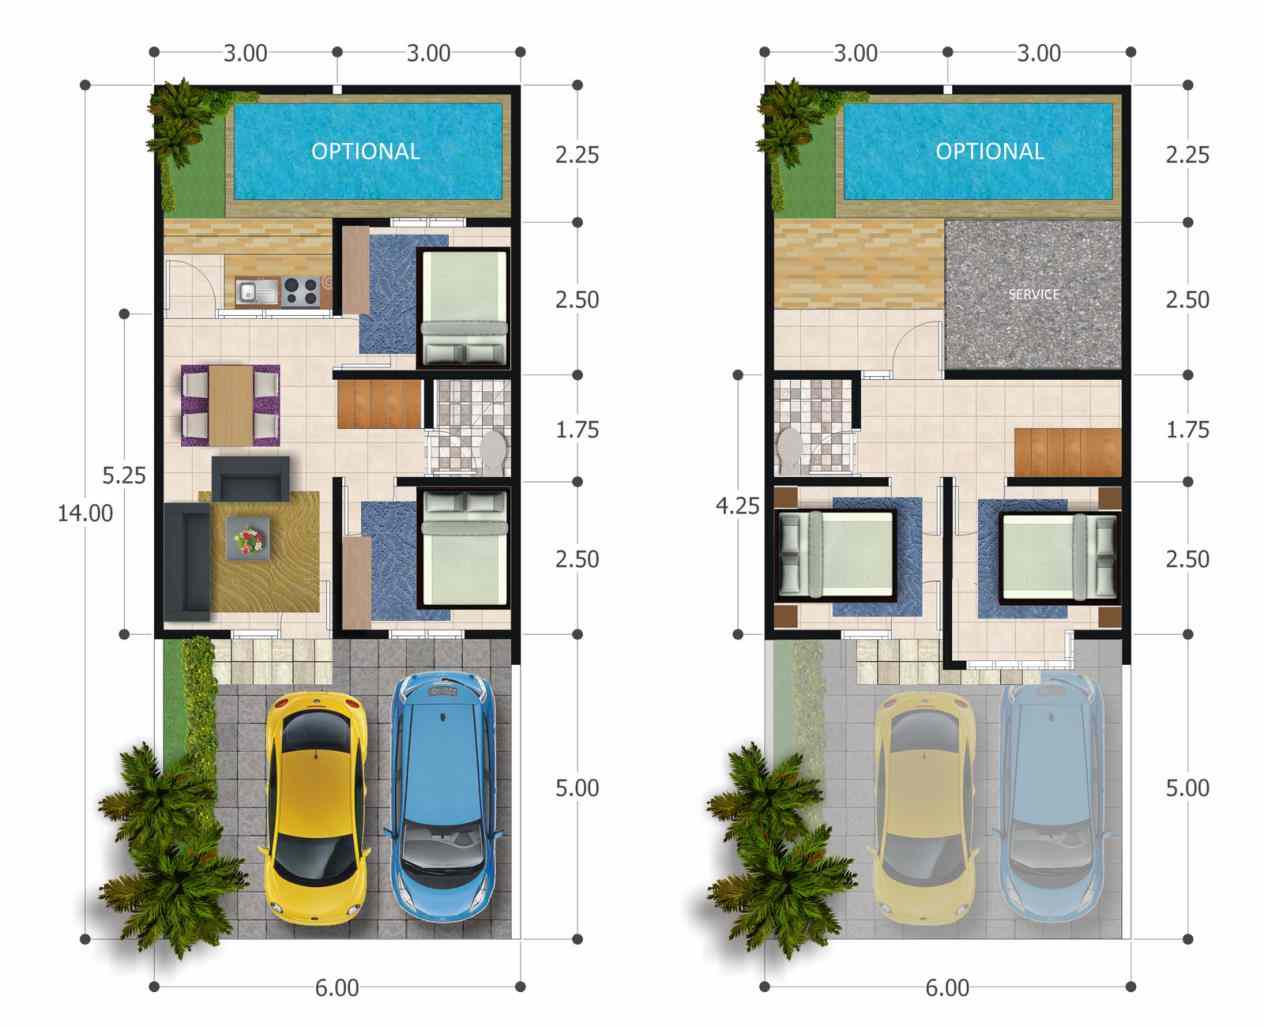 Desain Rumah Minimalis Modern Kolam Renang Gambar Desain Rumah